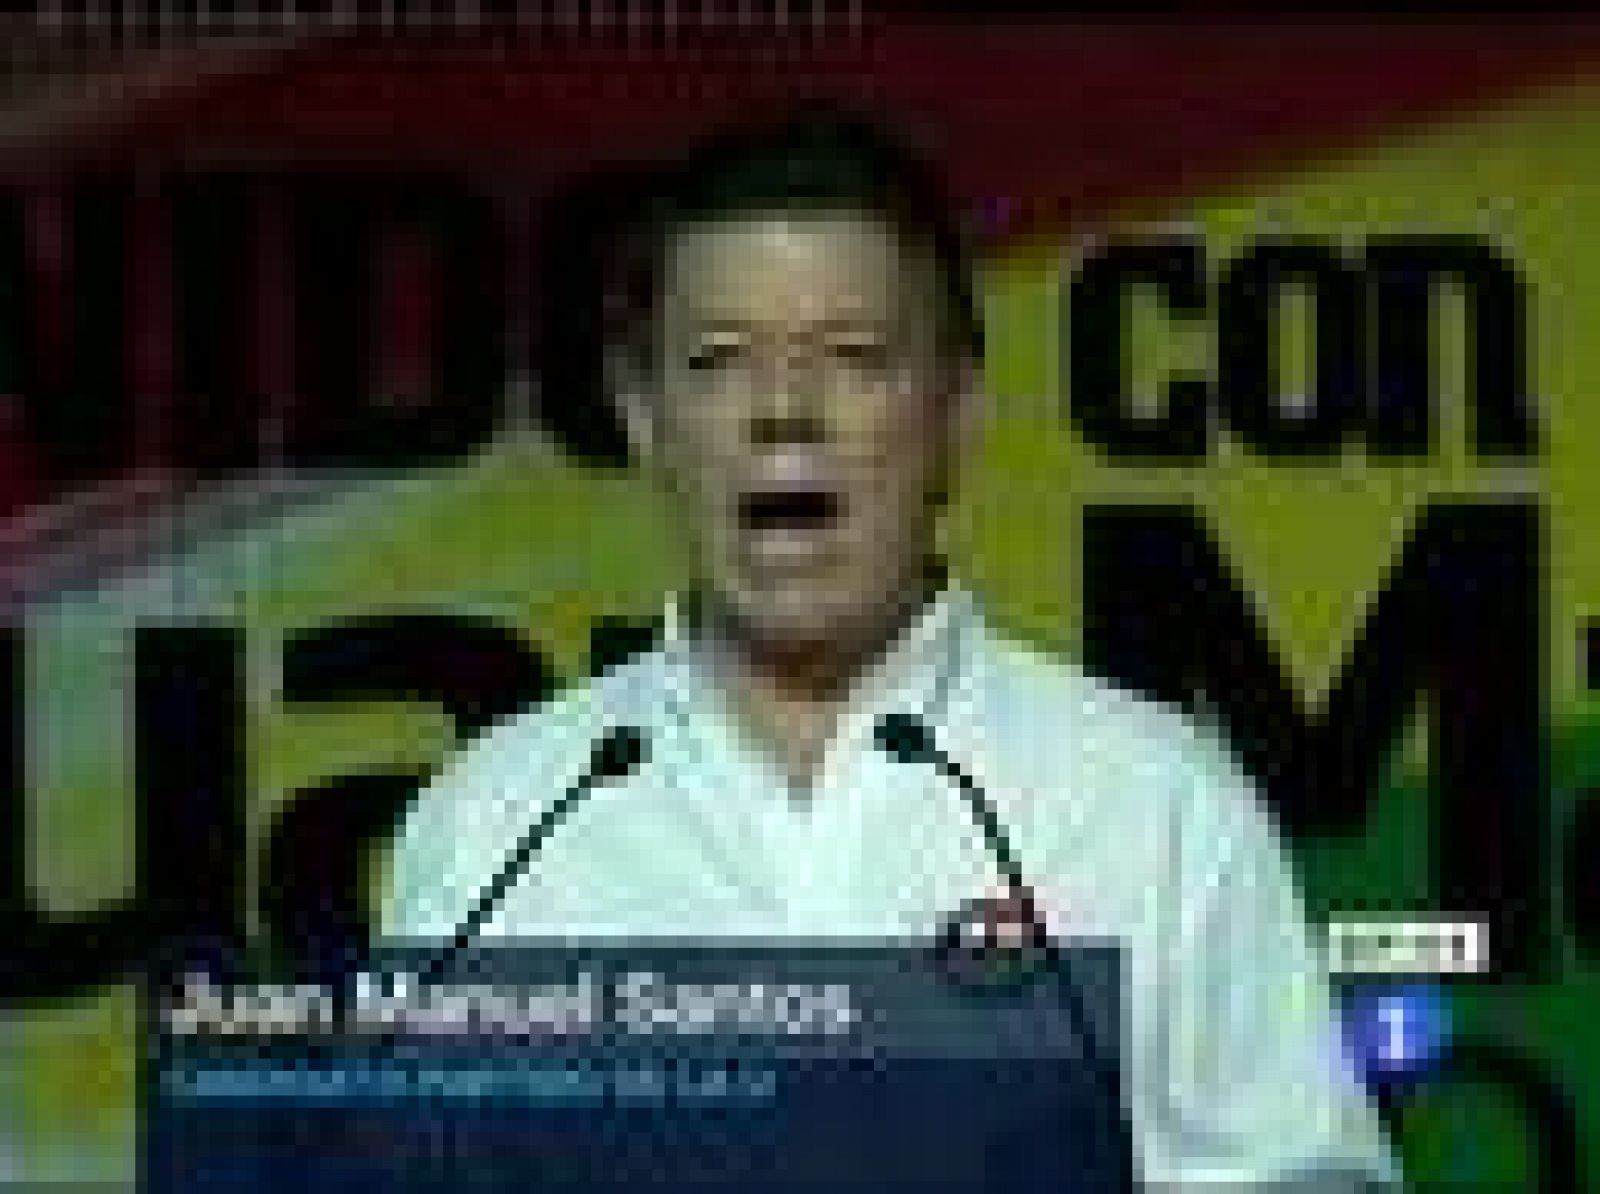 El candidato oficialista Juan Manuel Santos ha resultado el más votado en las elecciones celebradas este domingo en Colombia con el 46,57 %, de los votos, por lo que se disputará la presidencia en la segunda vuelta con el aspirante del Partido Verde, Antanas Mockus, que se ha quedado con el 21,48%.